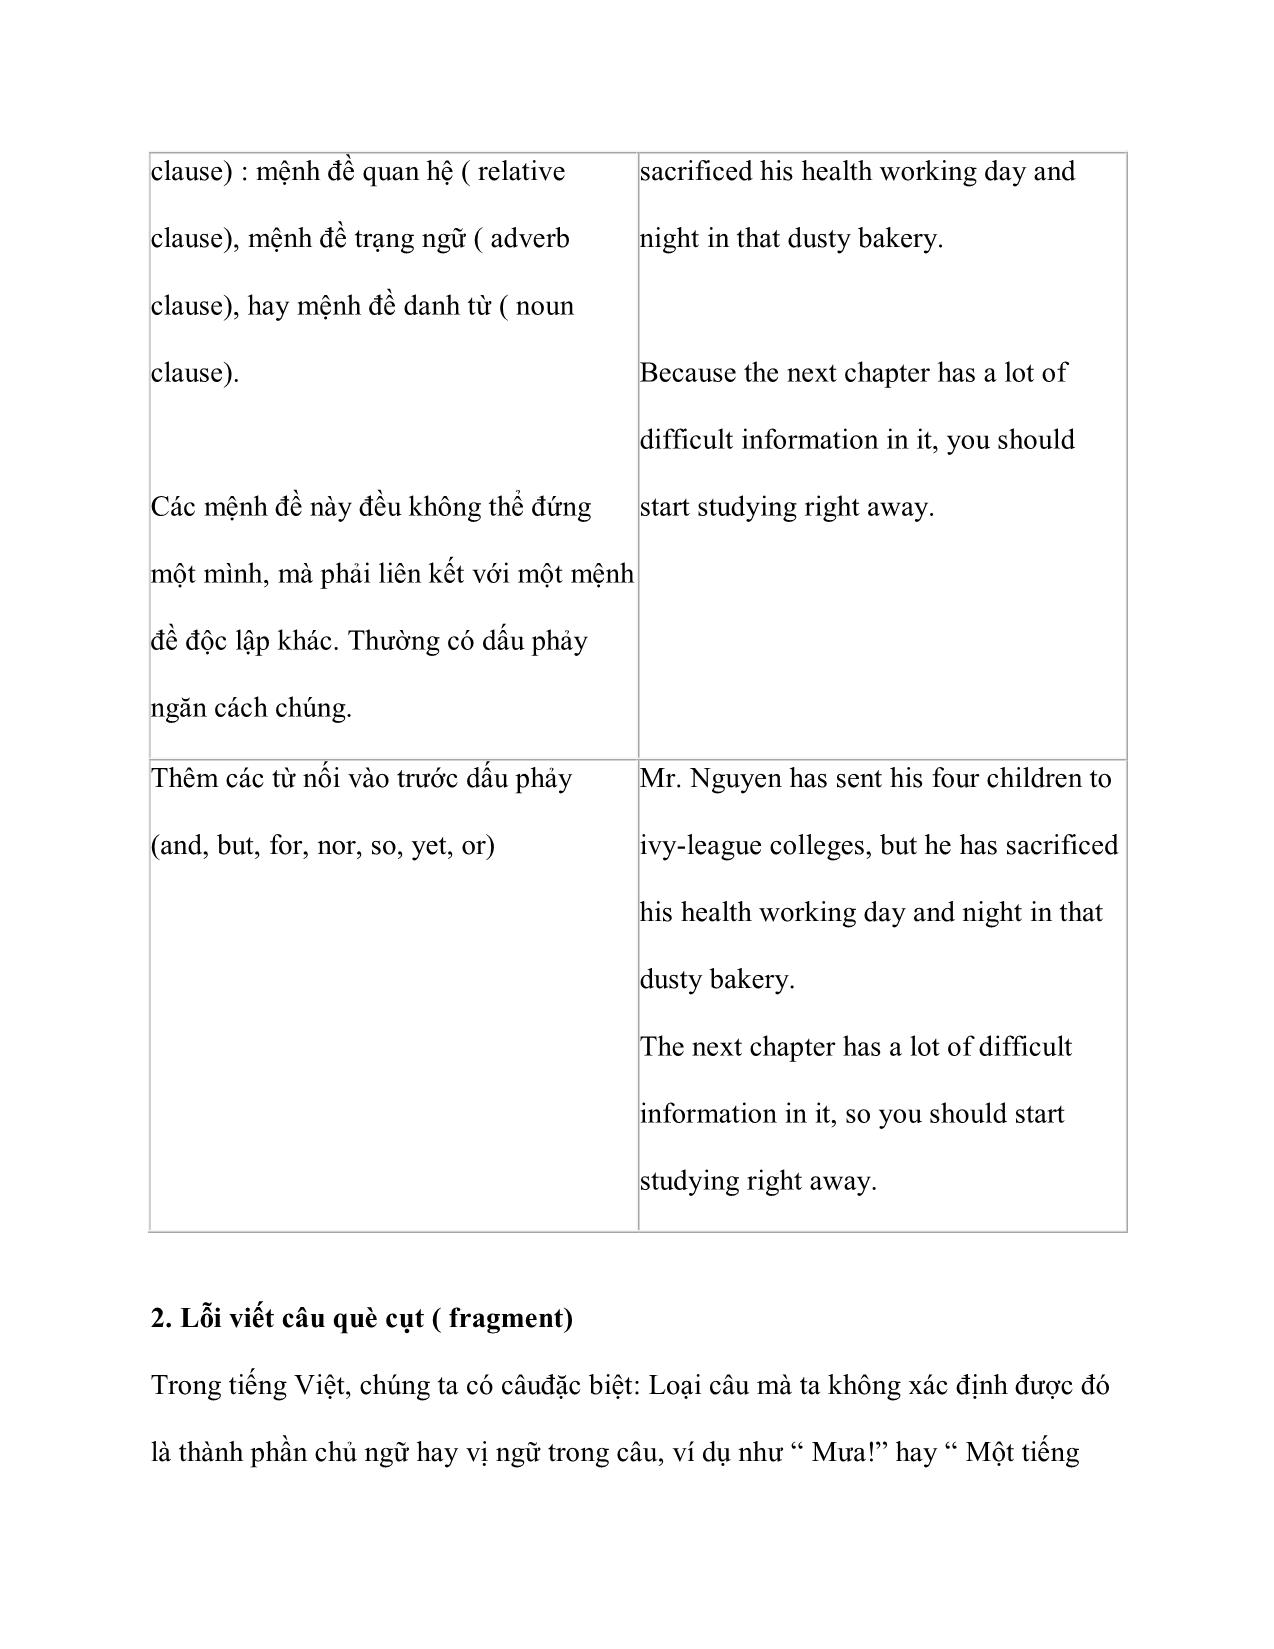 Các lỗi câu cơ bản trong văn viết trang 5